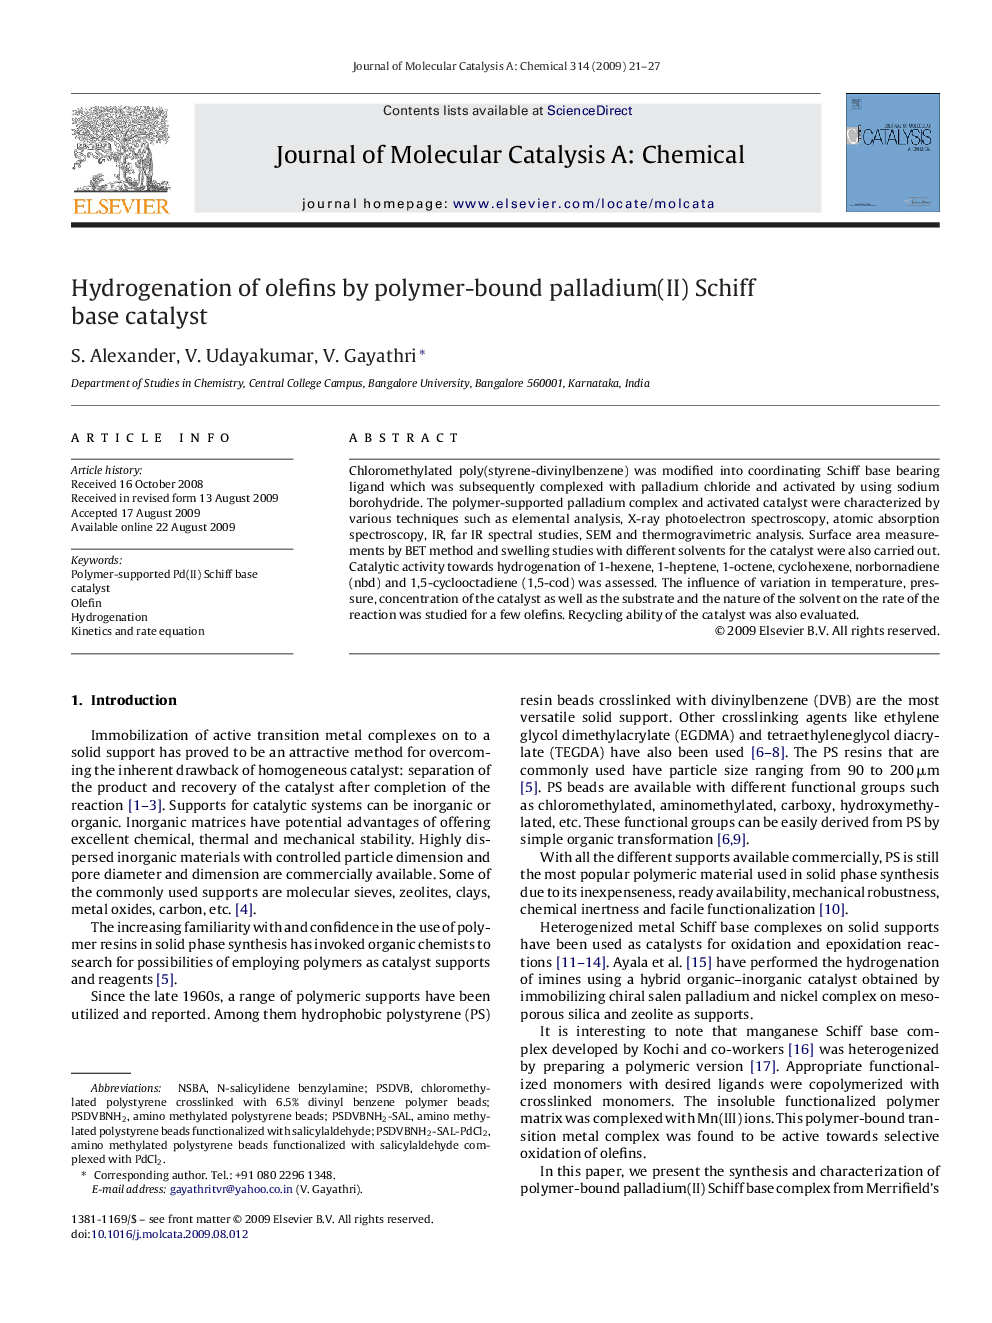 Hydrogenation of olefins by polymer-bound palladium(II) Schiff base catalyst